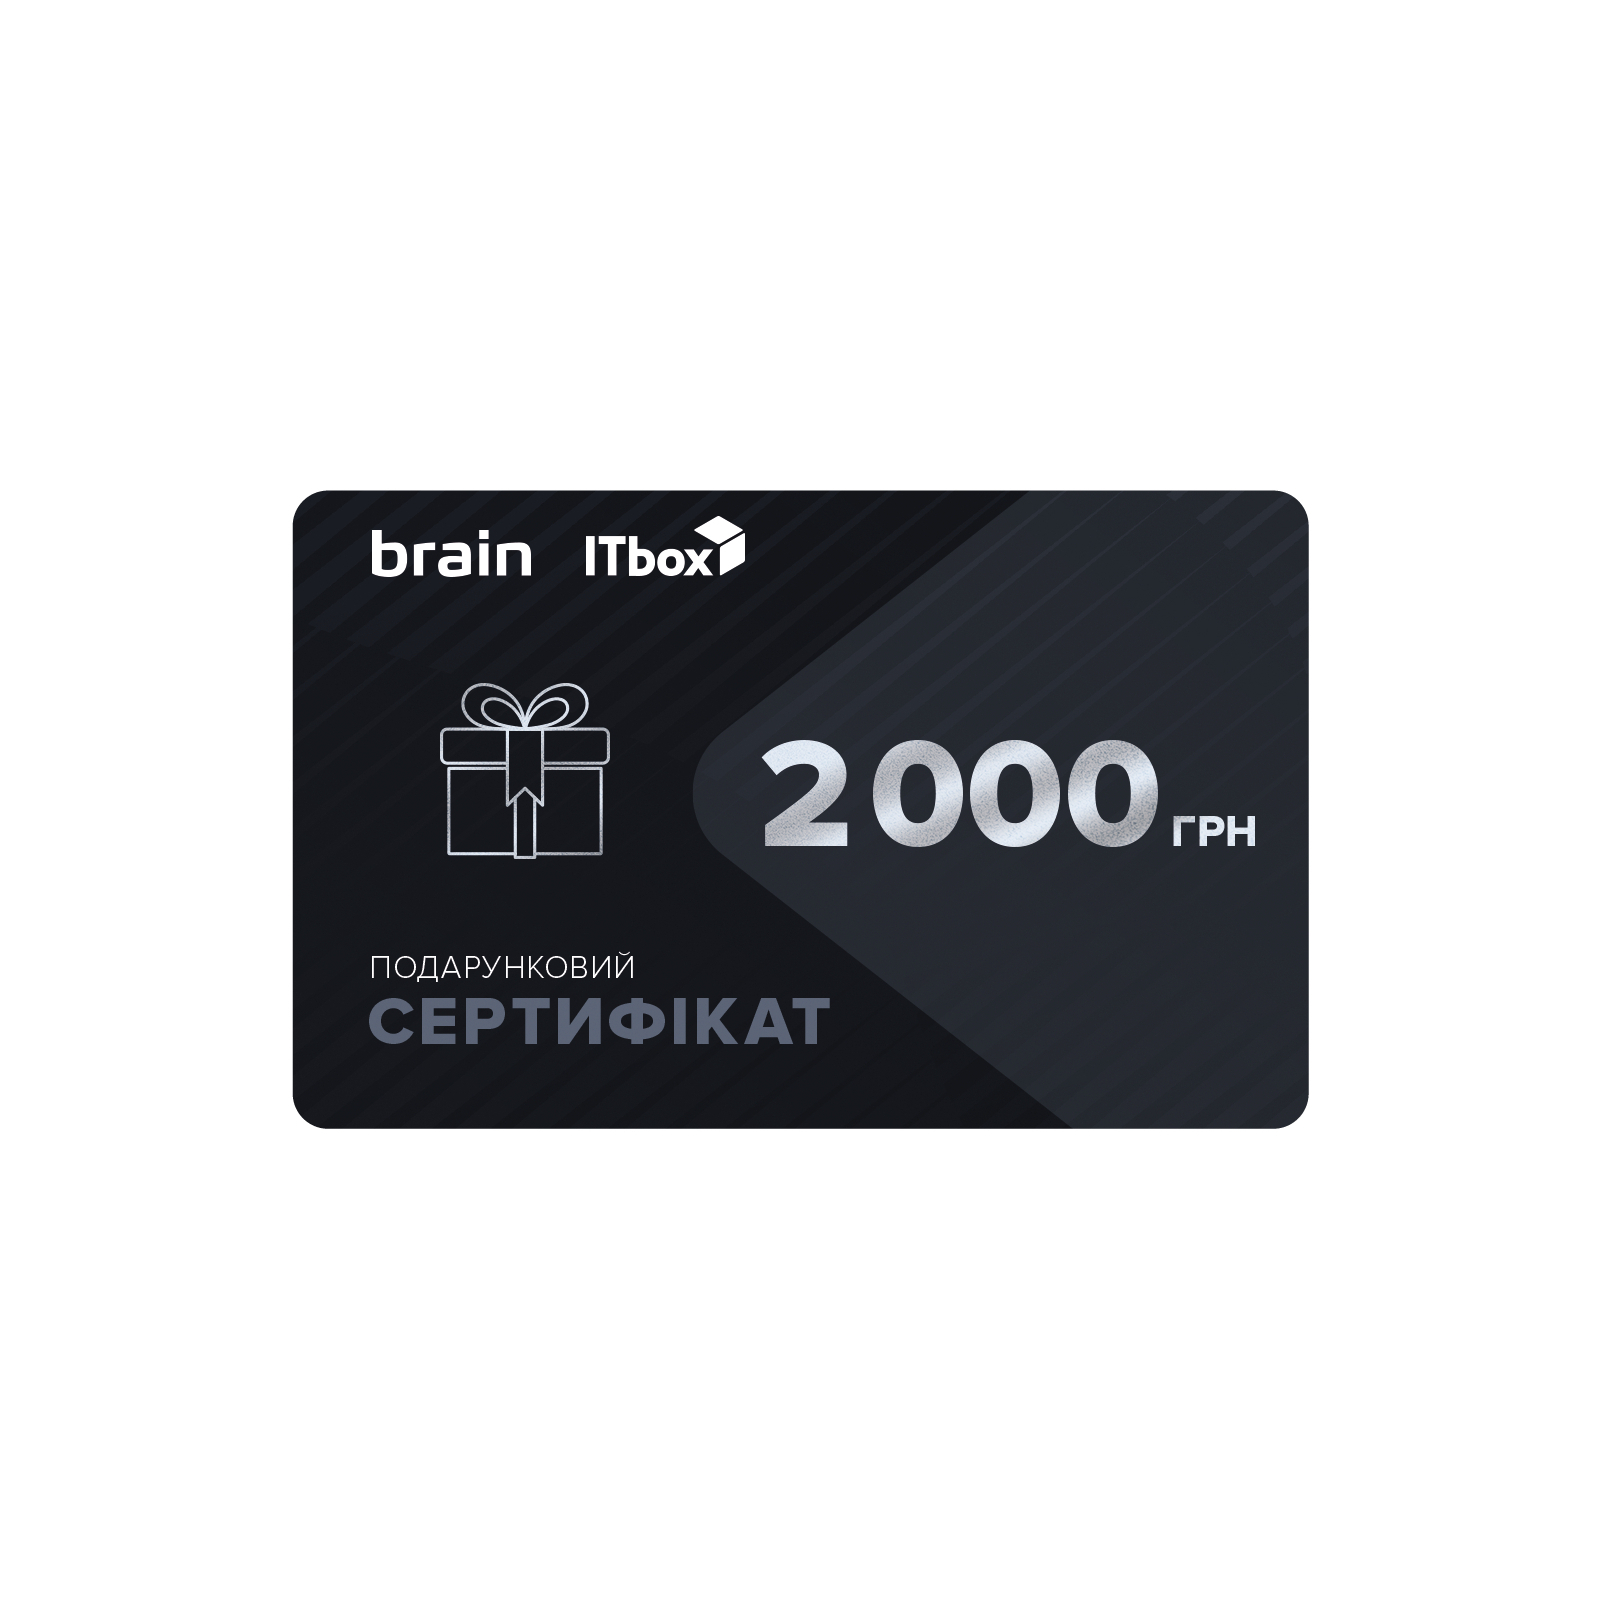 Подарунковий сертифікат на 2000 грн Brain/ITbox